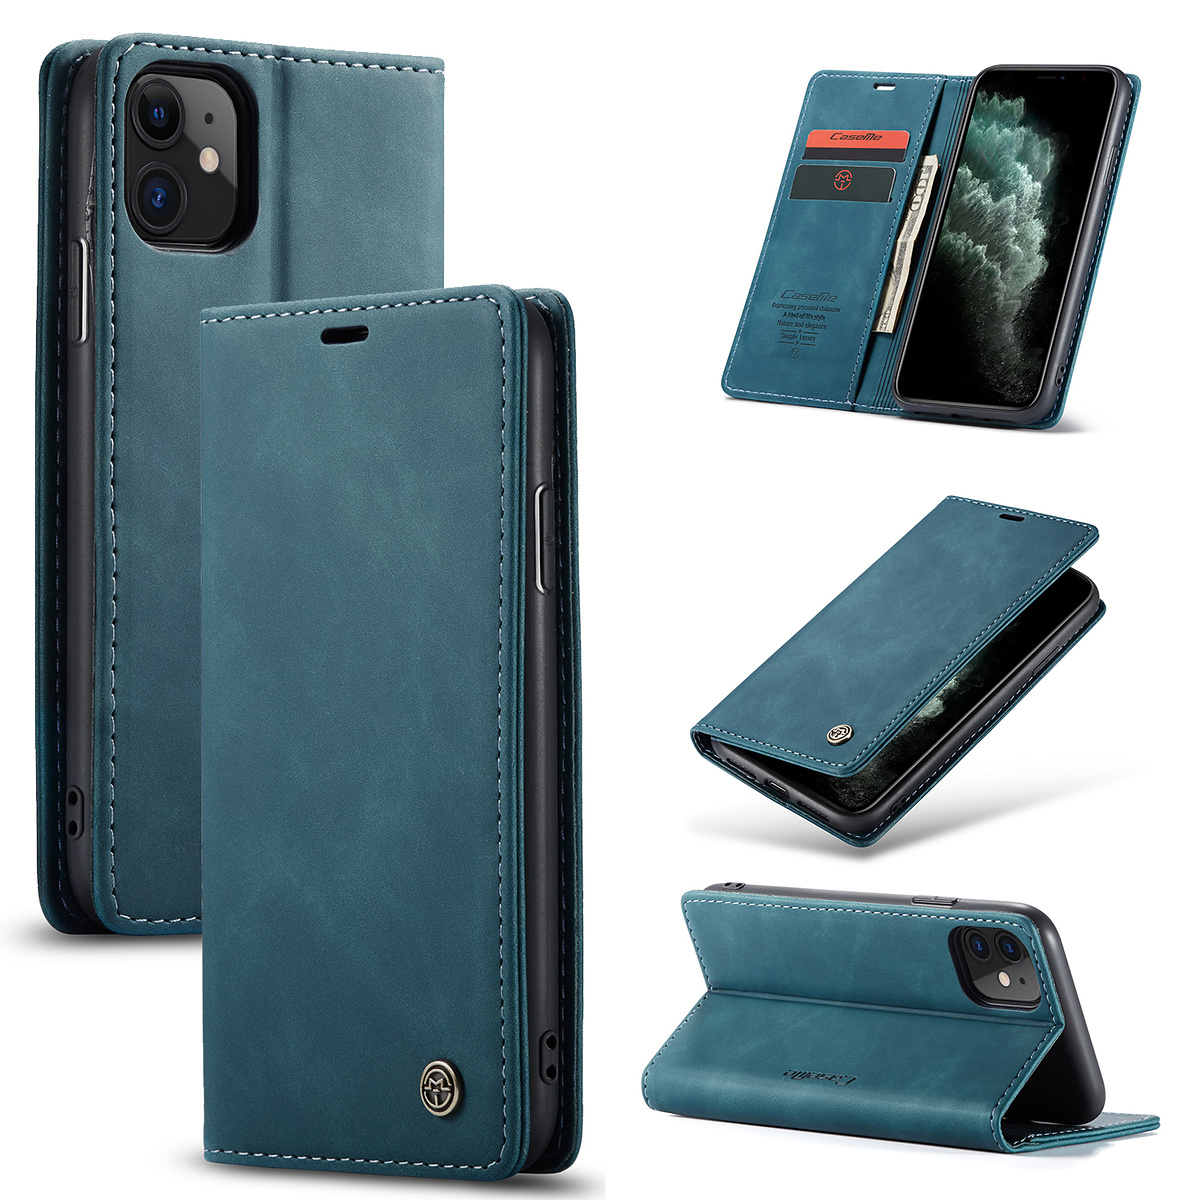 CaseMe plånboksfodral, iPhone 11, grön